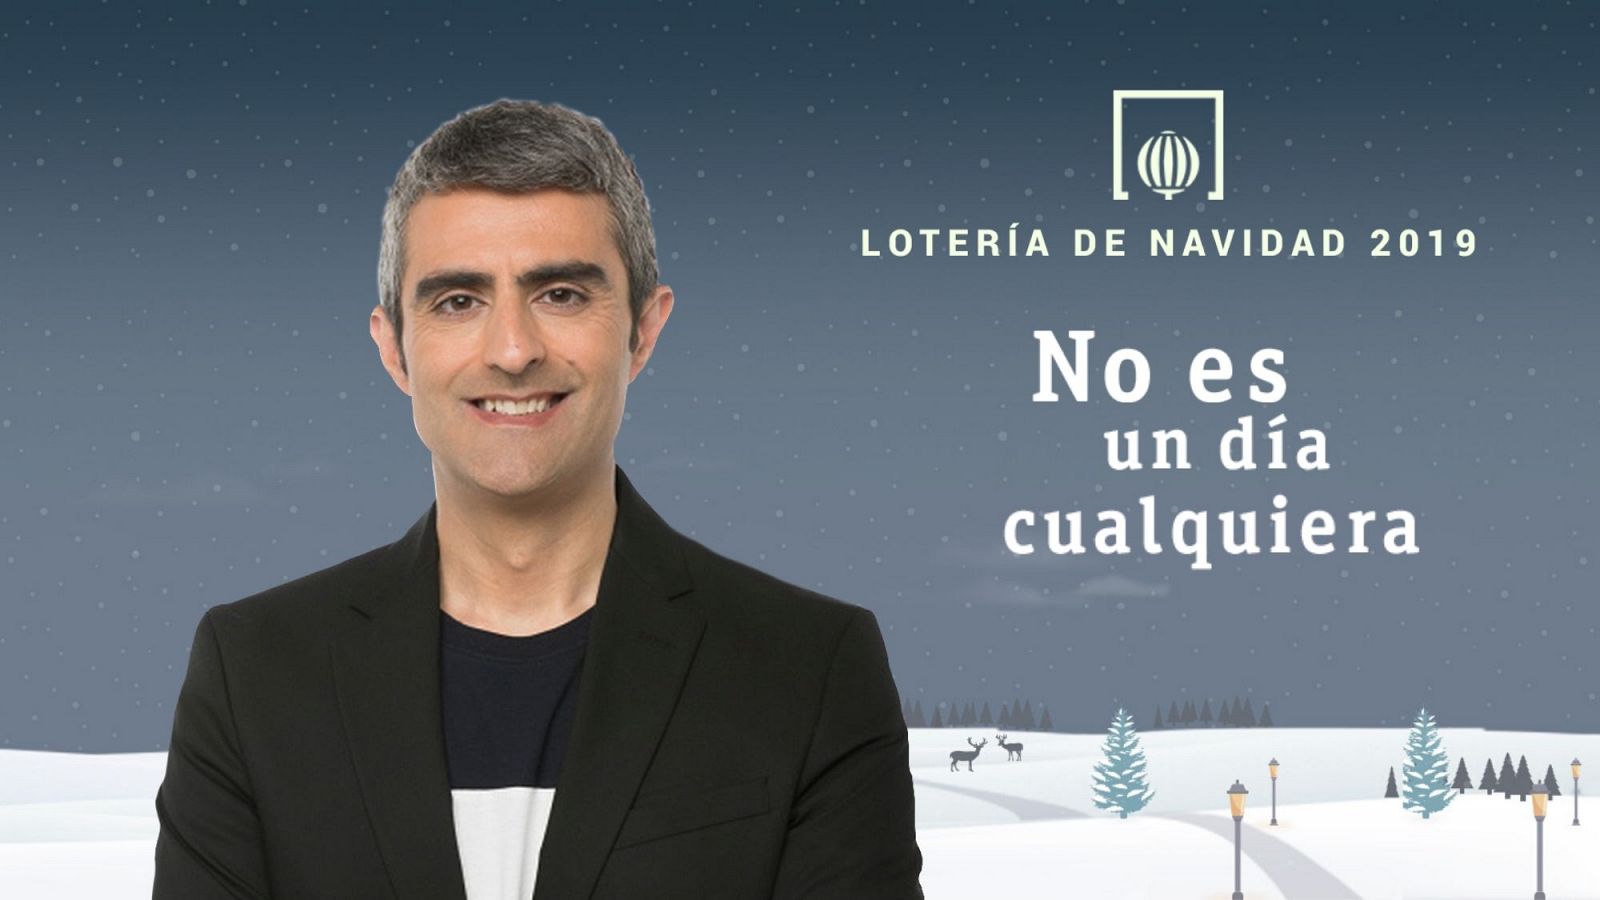 Lotería de Navidad 2019 con Carles Mesa